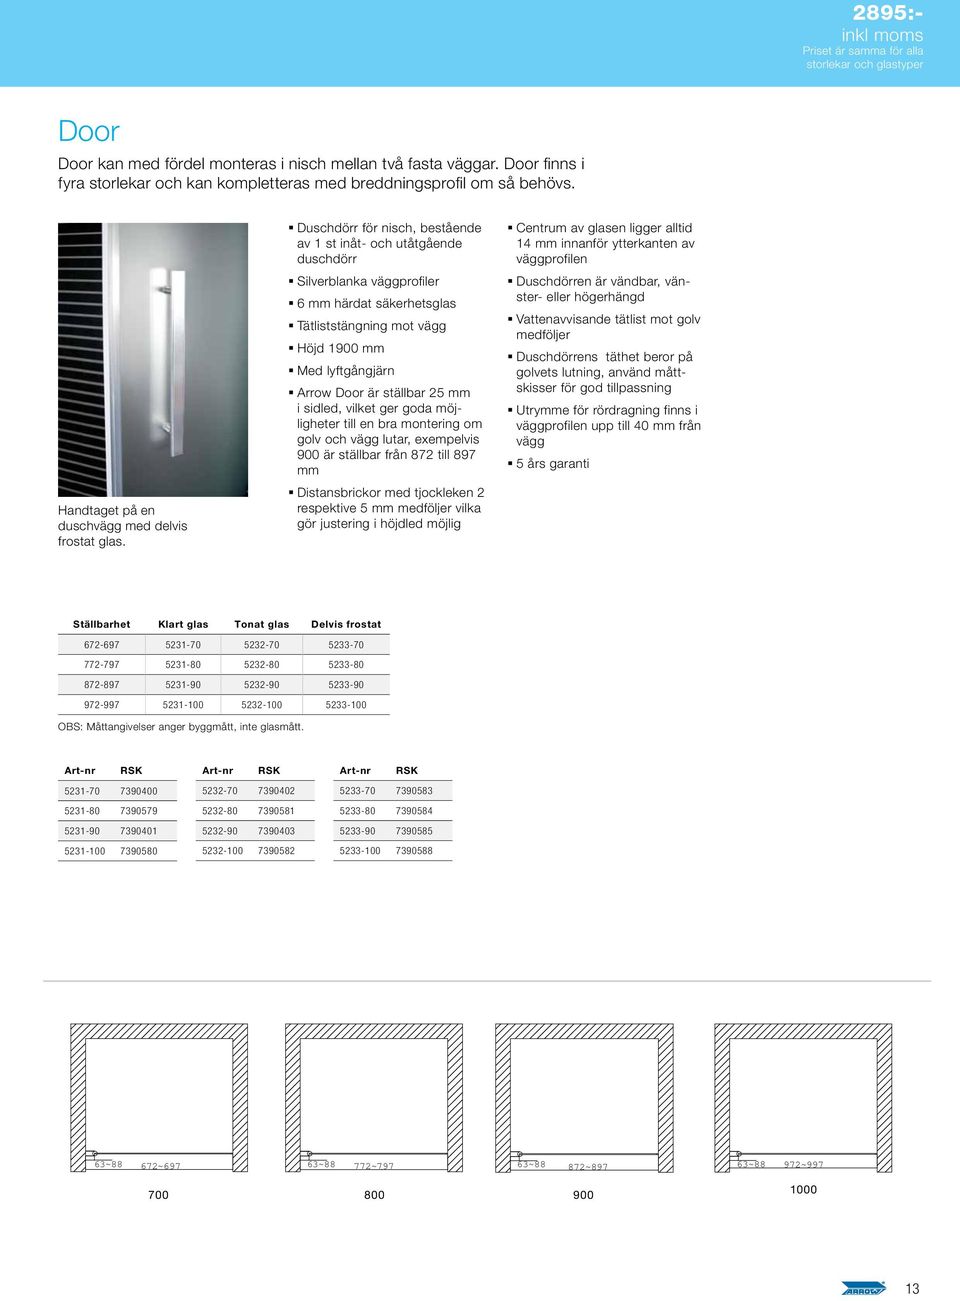 Duschdörr för nisch, bestående av 1 st inåt- och utåtgående duschdörr Silverblanka väggprofiler 6 mm härdat säkerhetsglas Tätliststängning mot vägg Höjd 1900 mm Med lyftgångjärn Arrow Door är